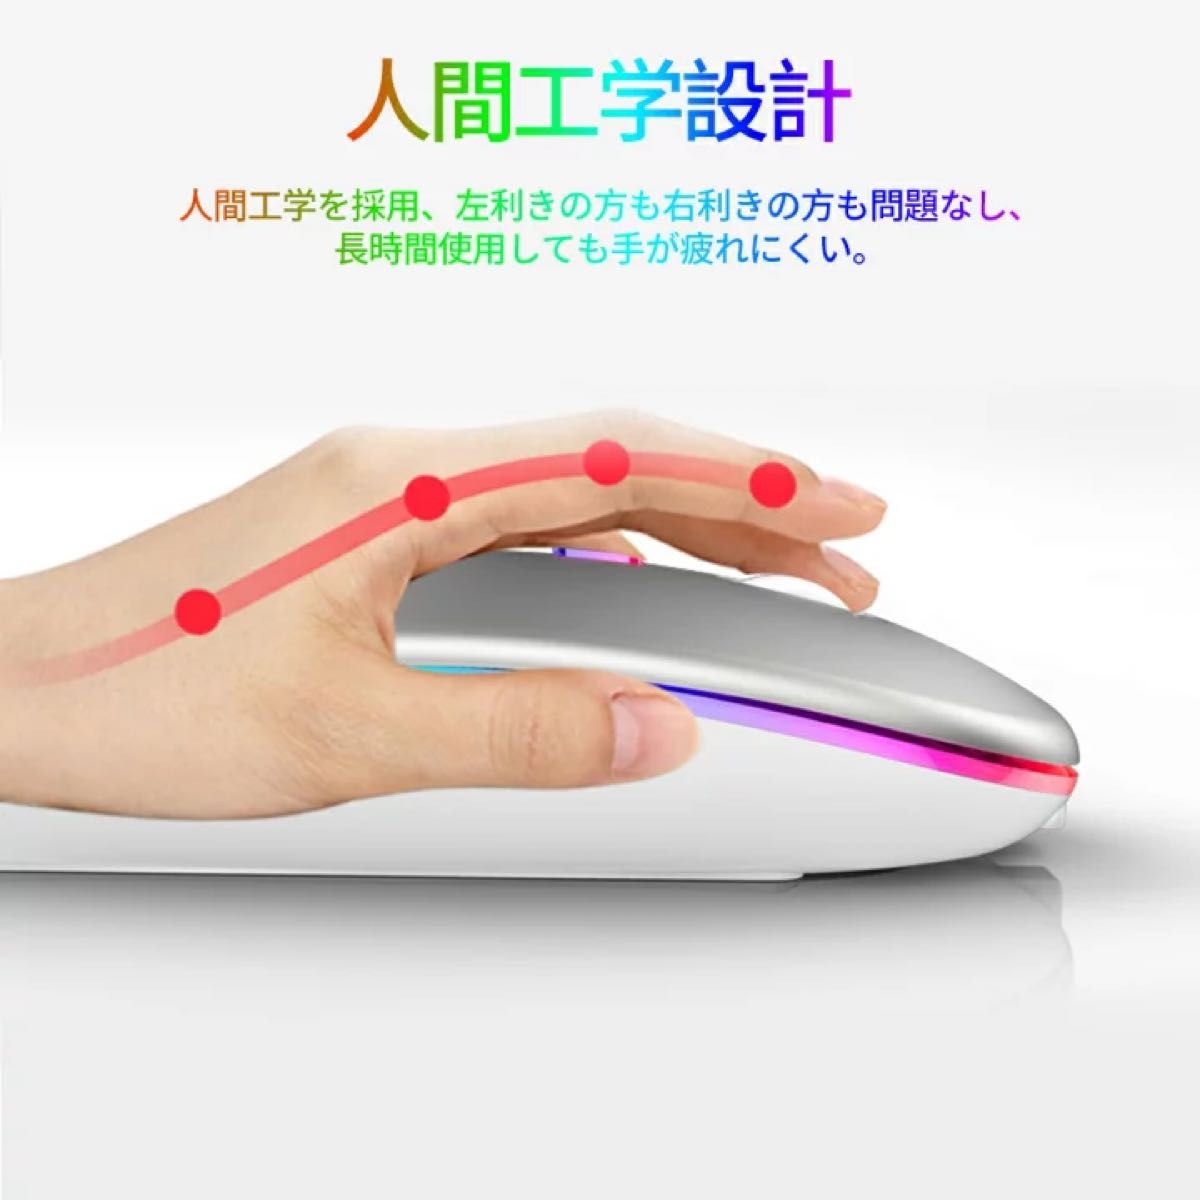 Bluetoothマウス パソコン シルバー 超薄型 静音 光るワイヤレスマウス